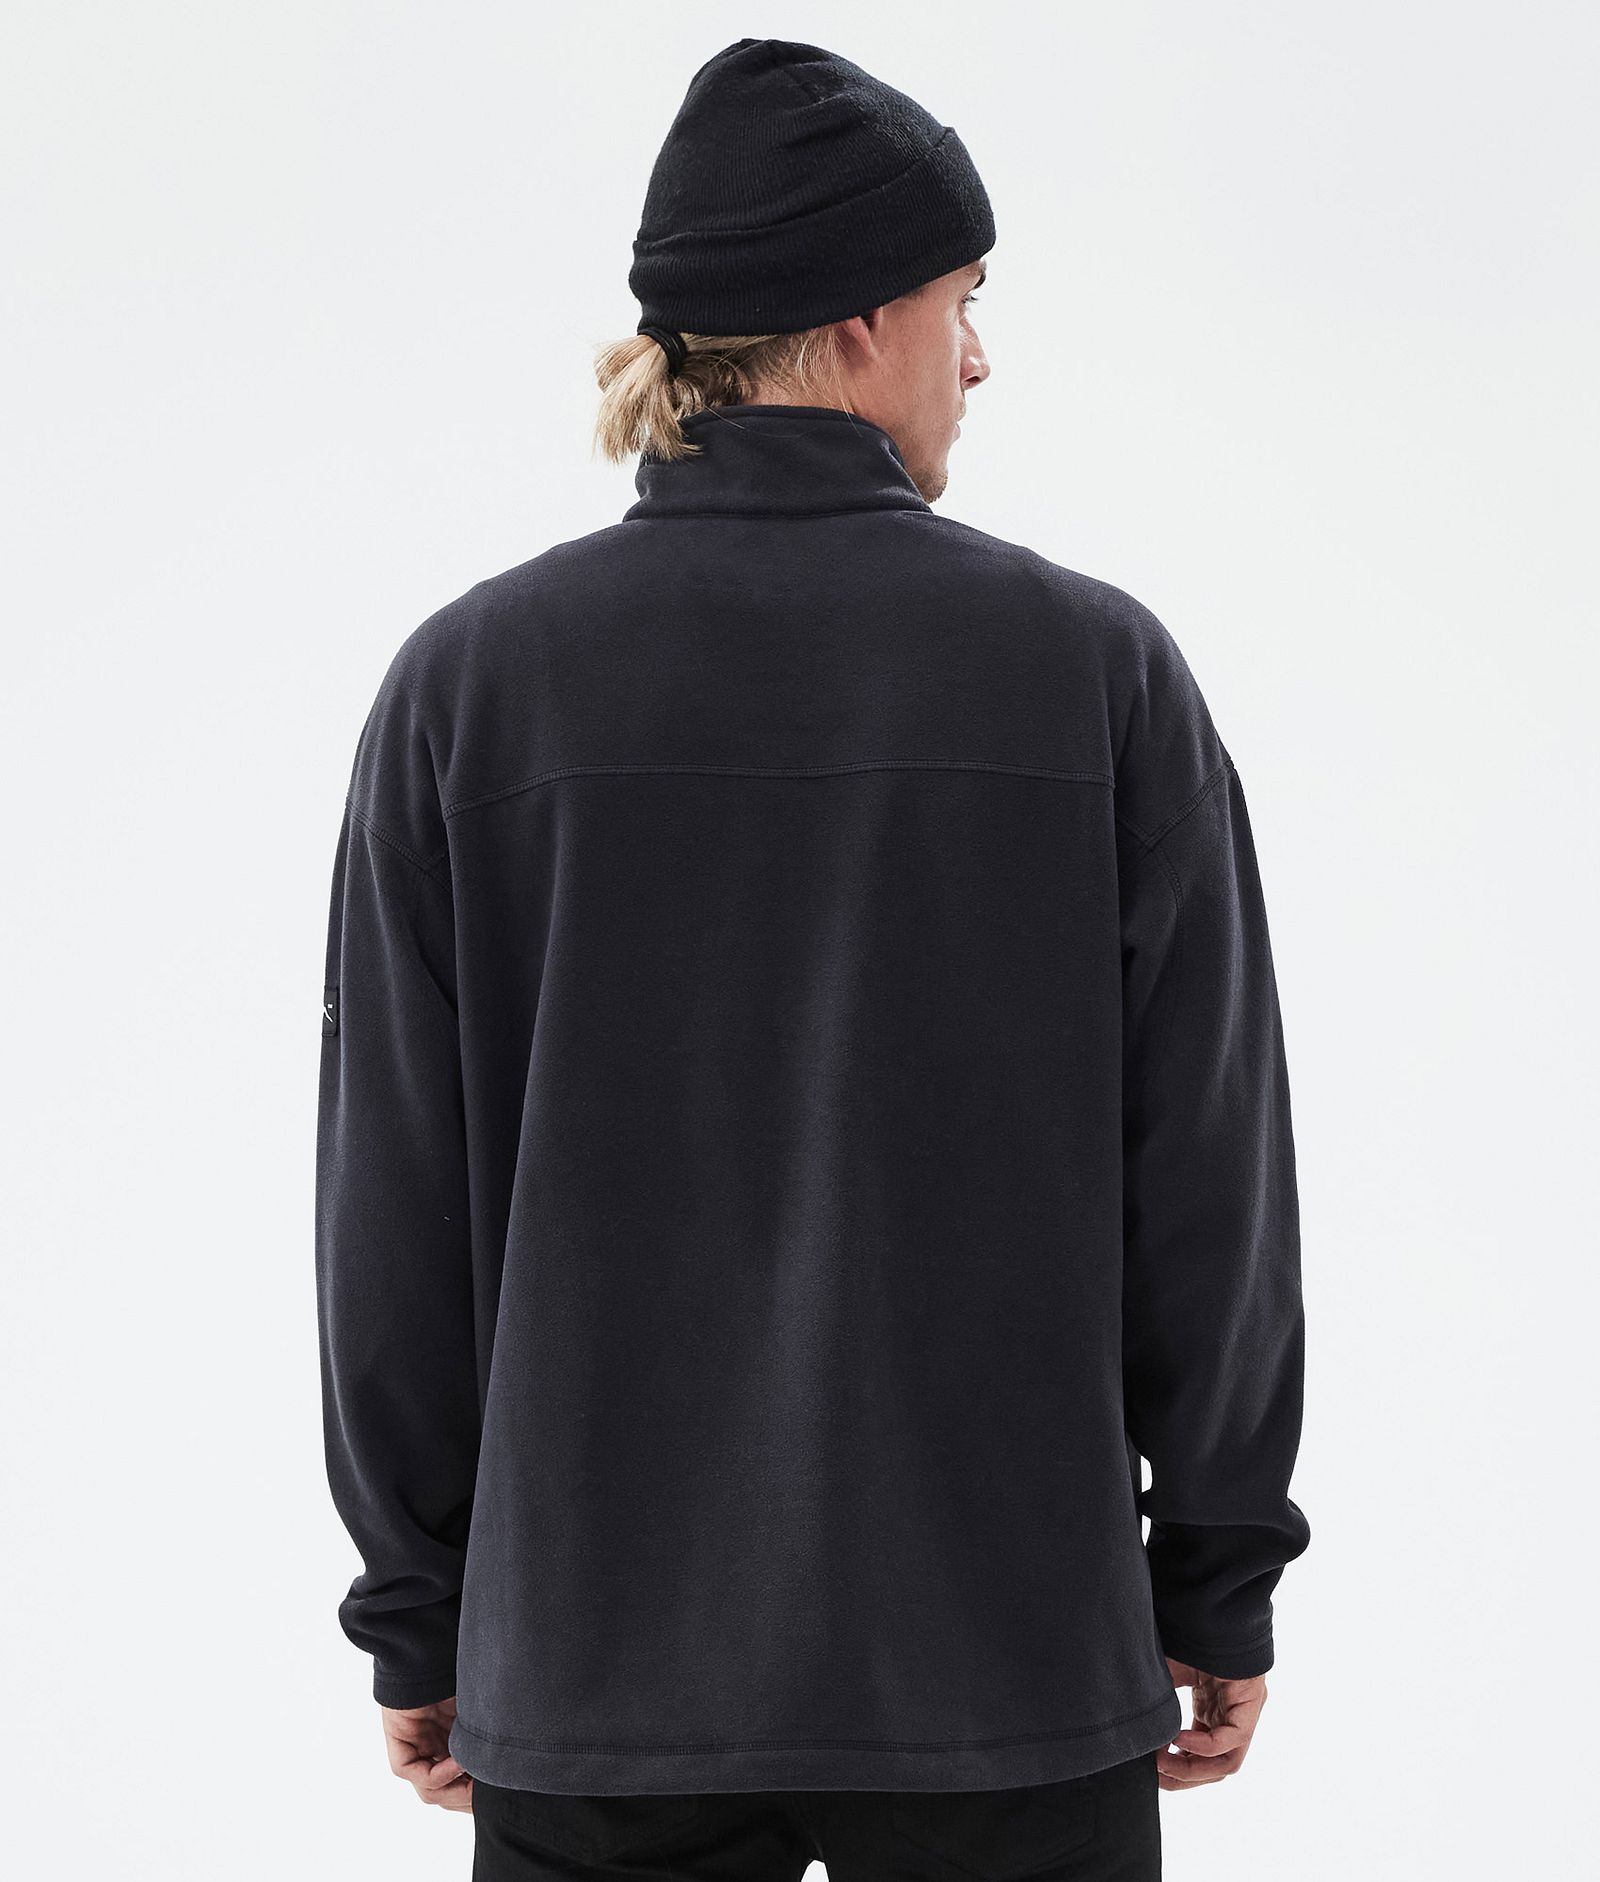 Dope Comfy Fleece Sweater Men Black Renewed, Image 6 of 6